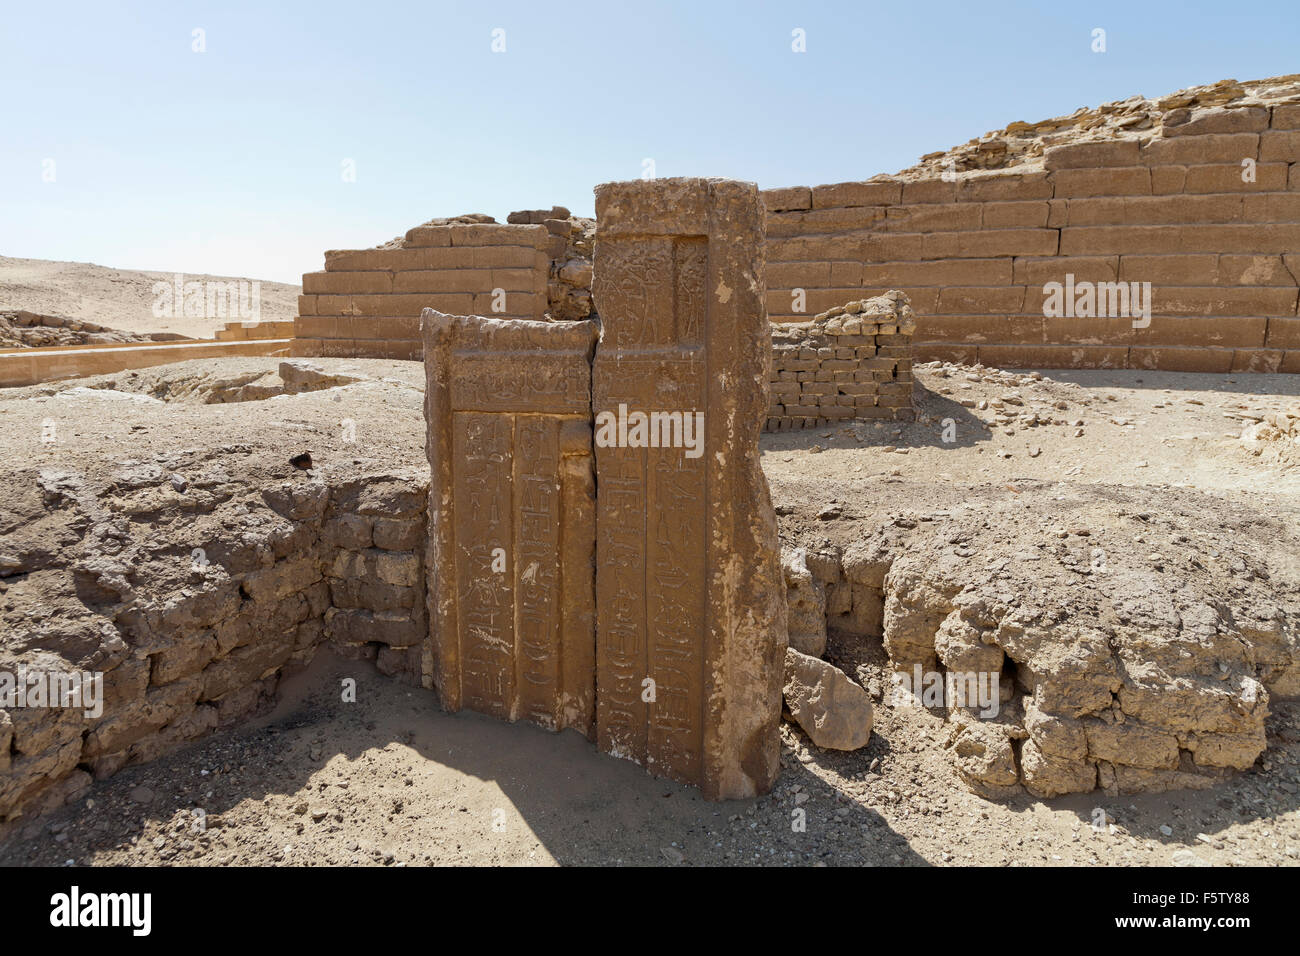 Inscrit vieux royaume porte à faux, l'UNAS Causeway en arrière-plan, à la nécropole de Sakkarah aussi connu sous le nom de Saqqara Égypte Banque D'Images